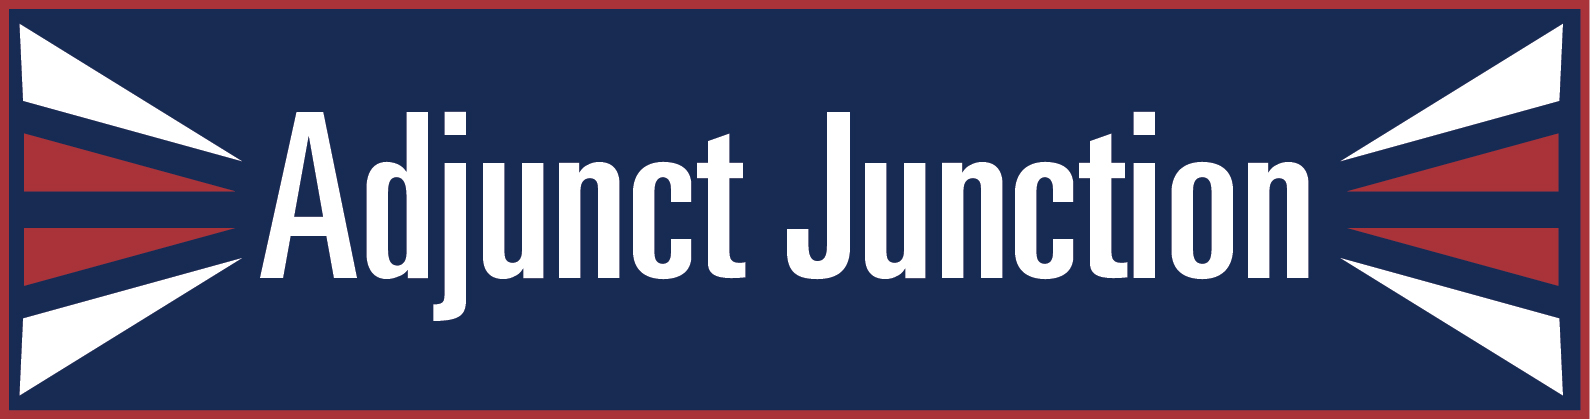 Adjunct Junction Page Banner